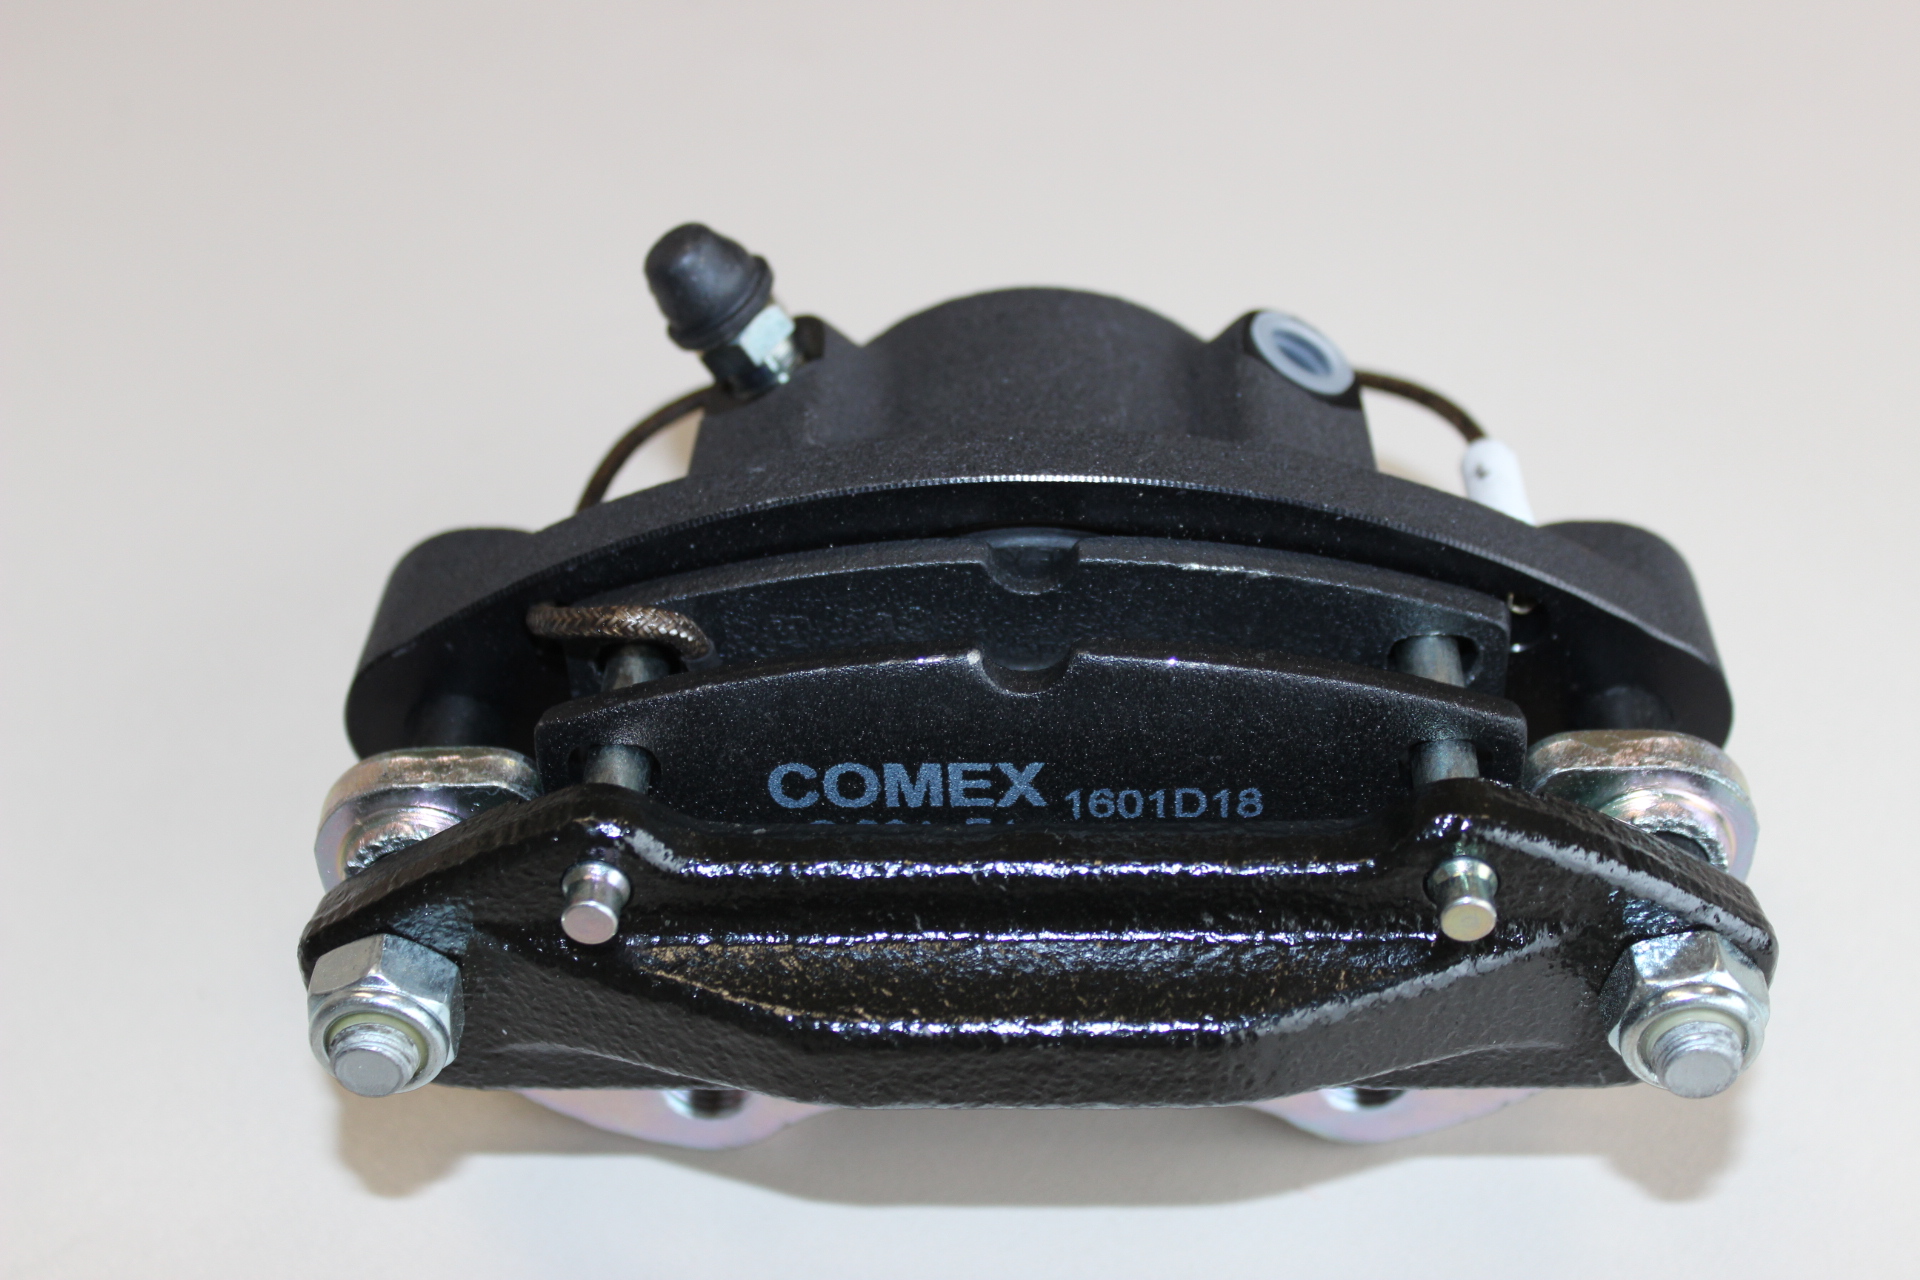 AIXAM-Ersatzteile im Onlineshop -  - Komplettset Bremse  vorne Ø 210 mm inkl. Bremsscheiben